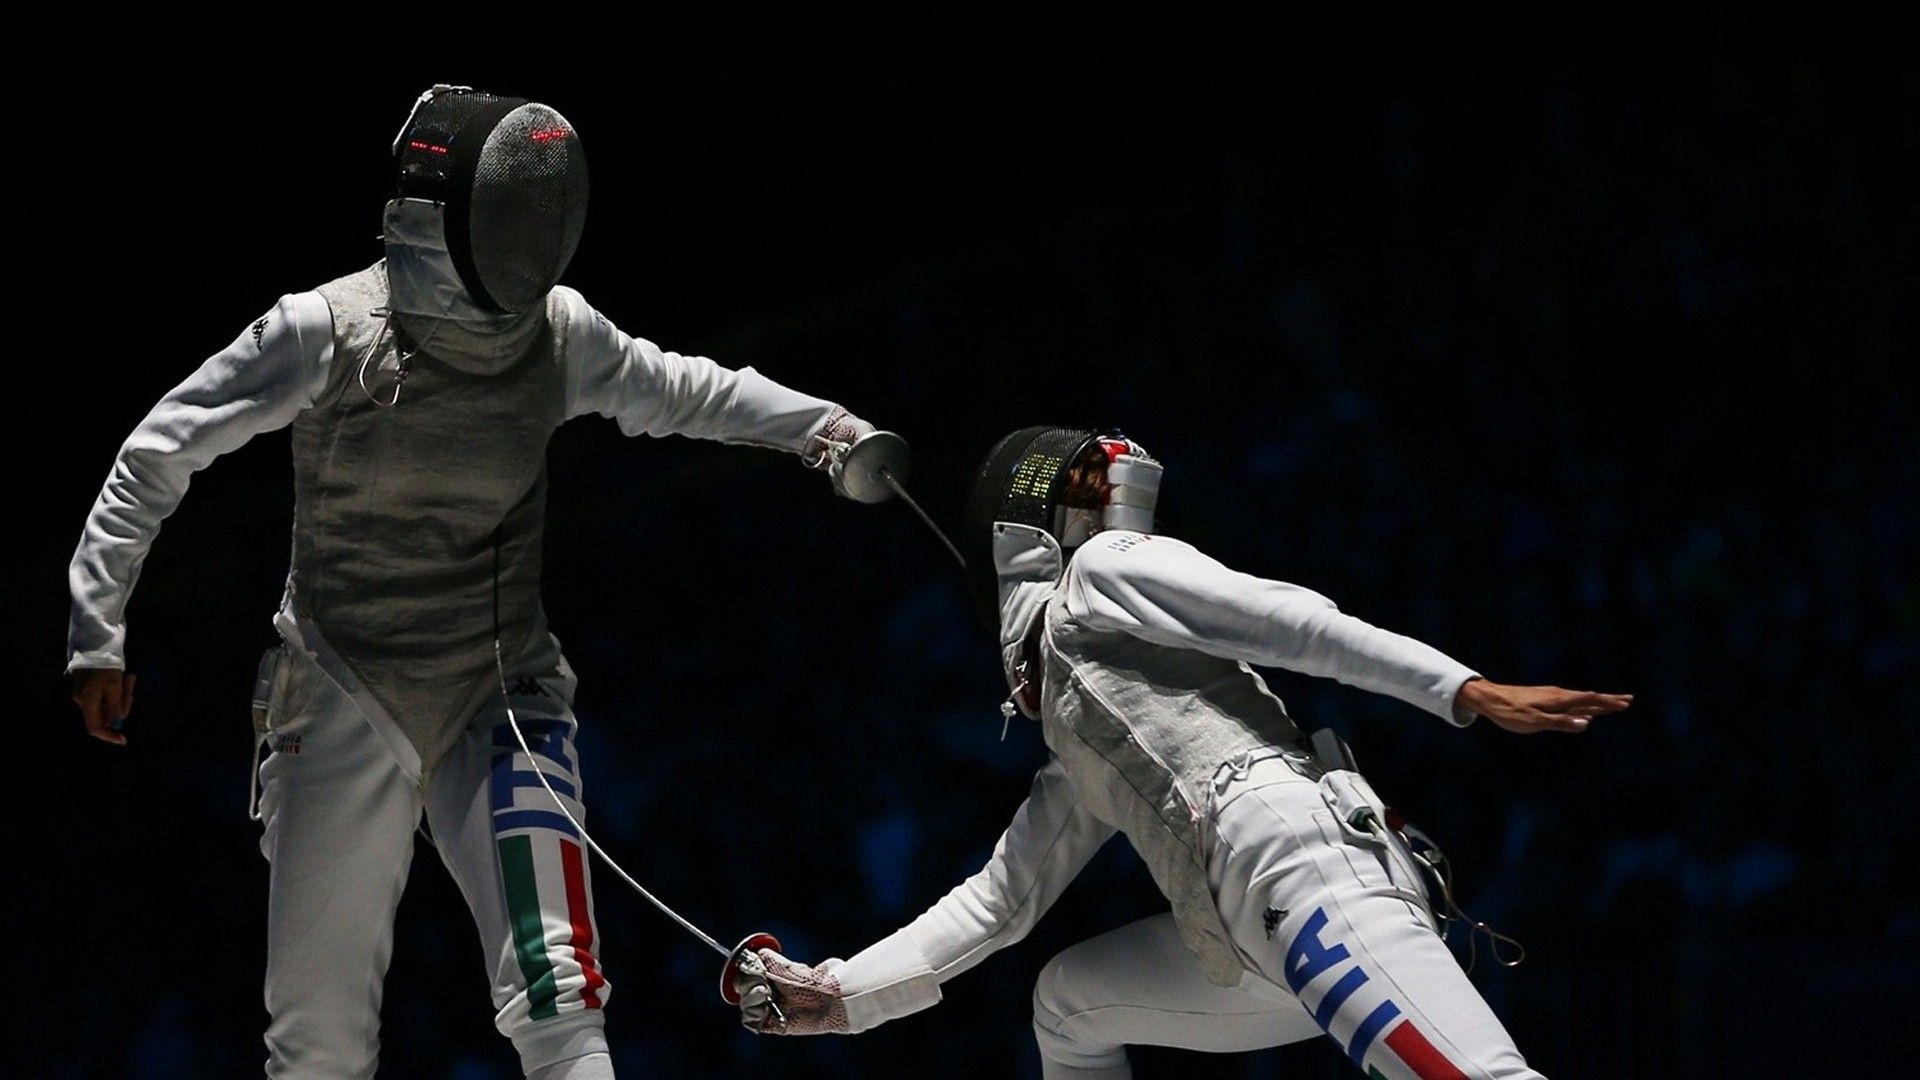 Fencing: Elisa Di Francisca vs. Arianna Errigo, The 2012 Summer Olympics. 1920x1080 Full HD Wallpaper.